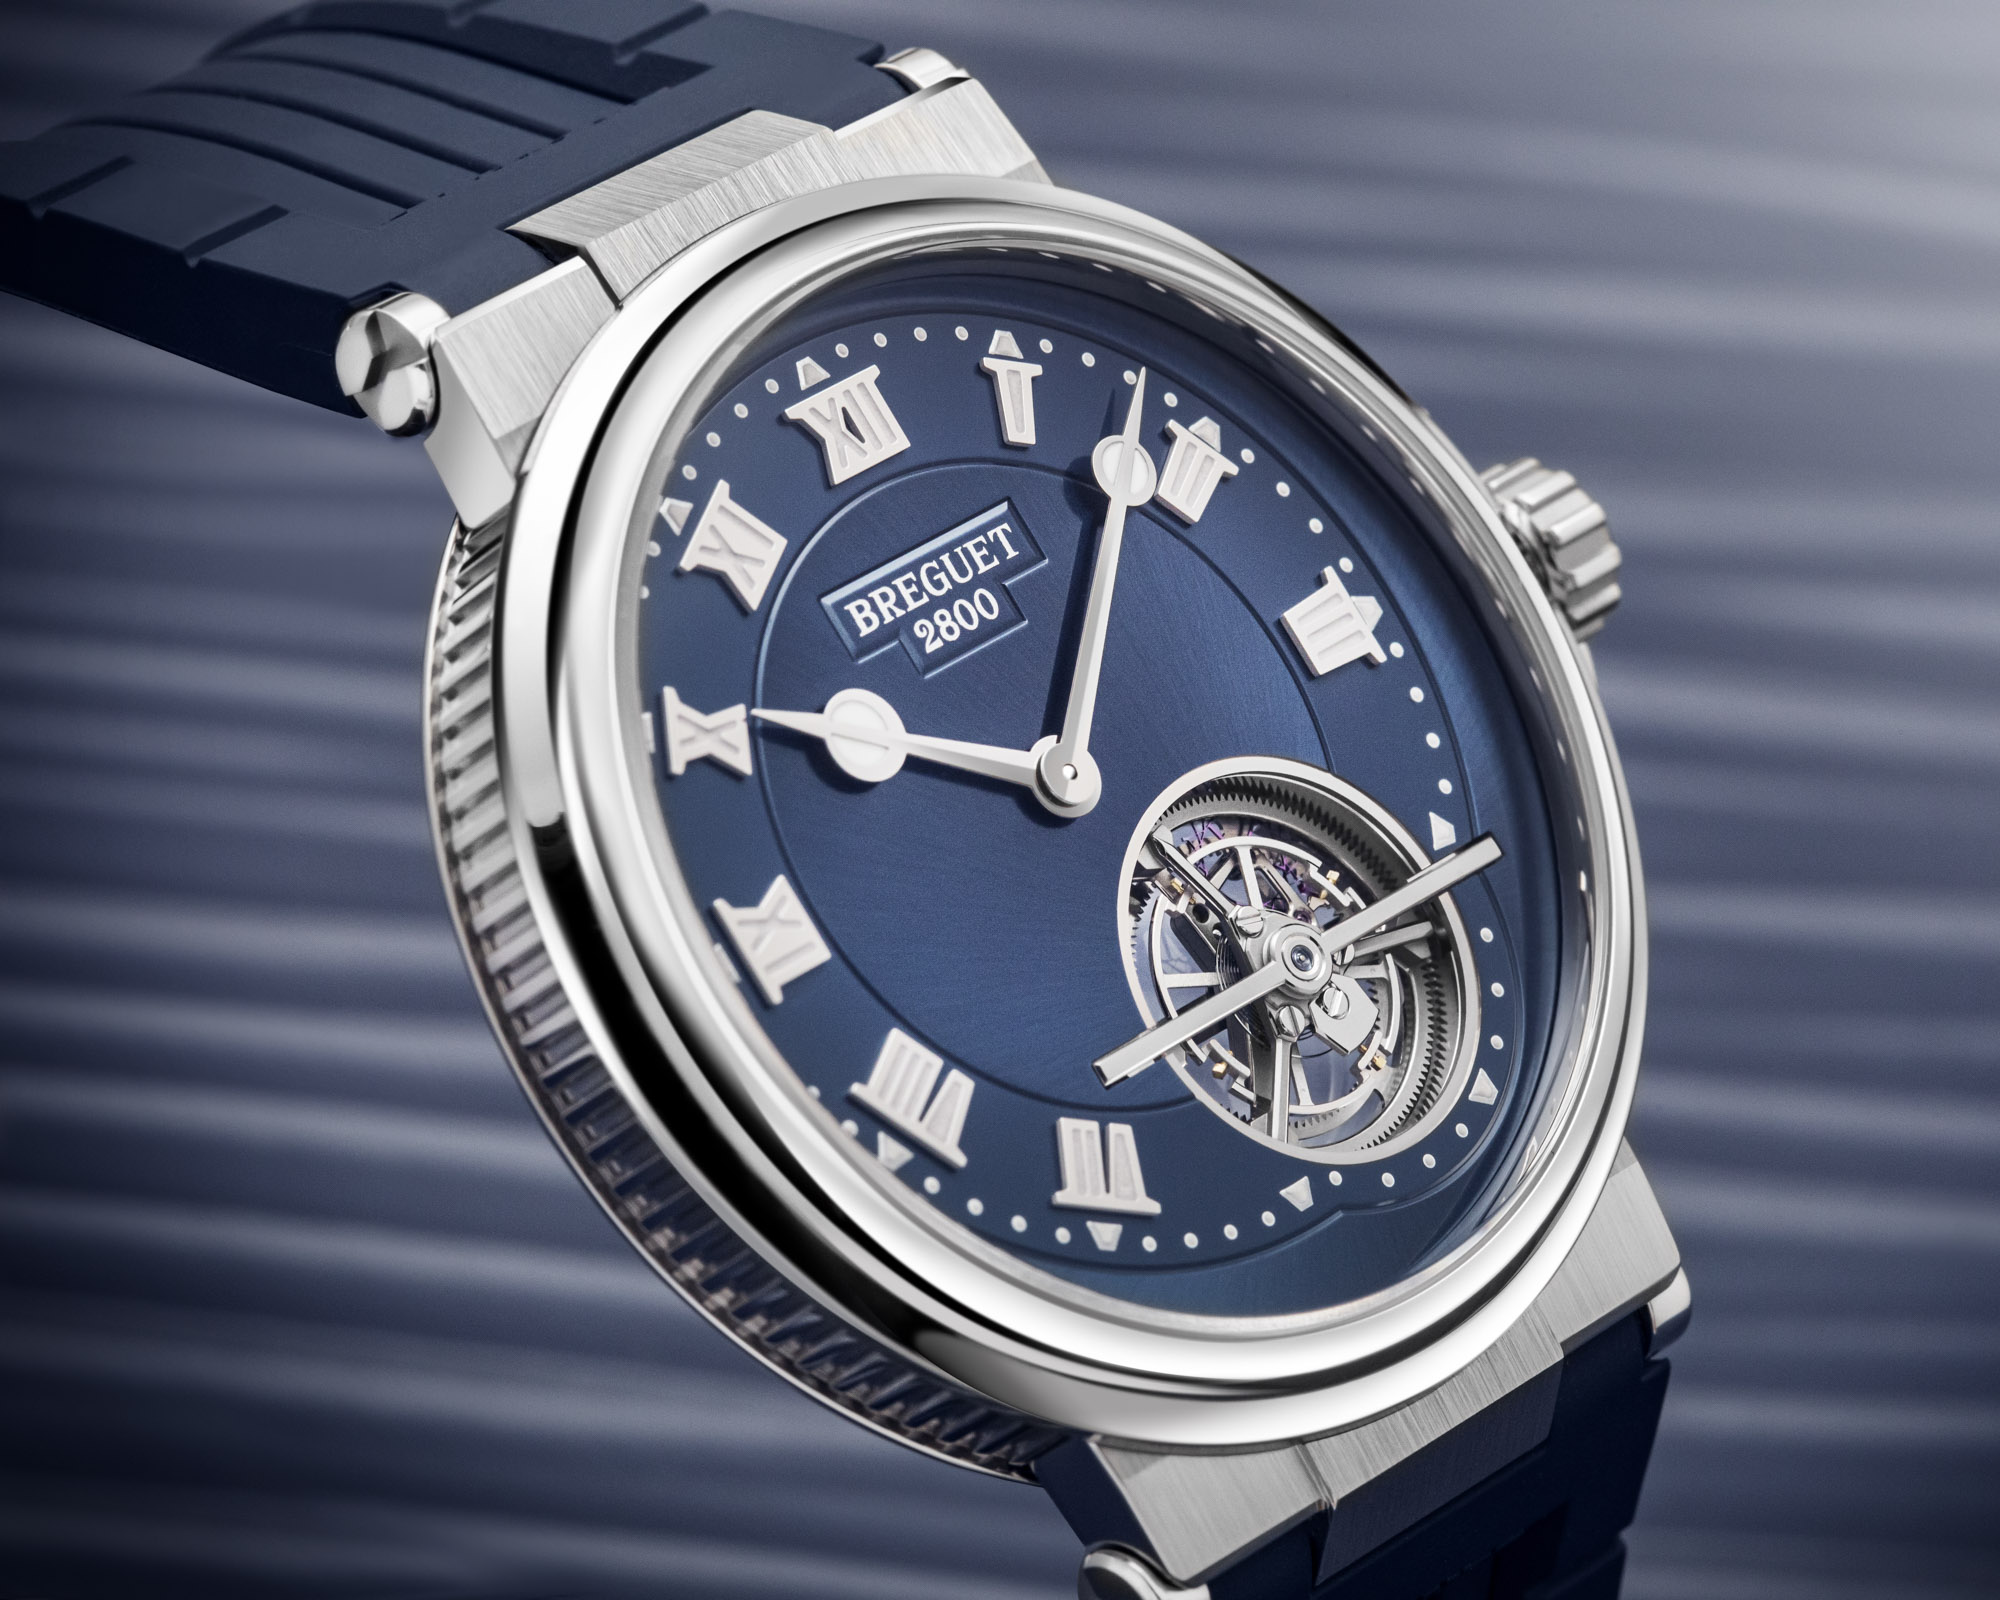 New Release: Breguet Marine Tourbillon 5577 Watch